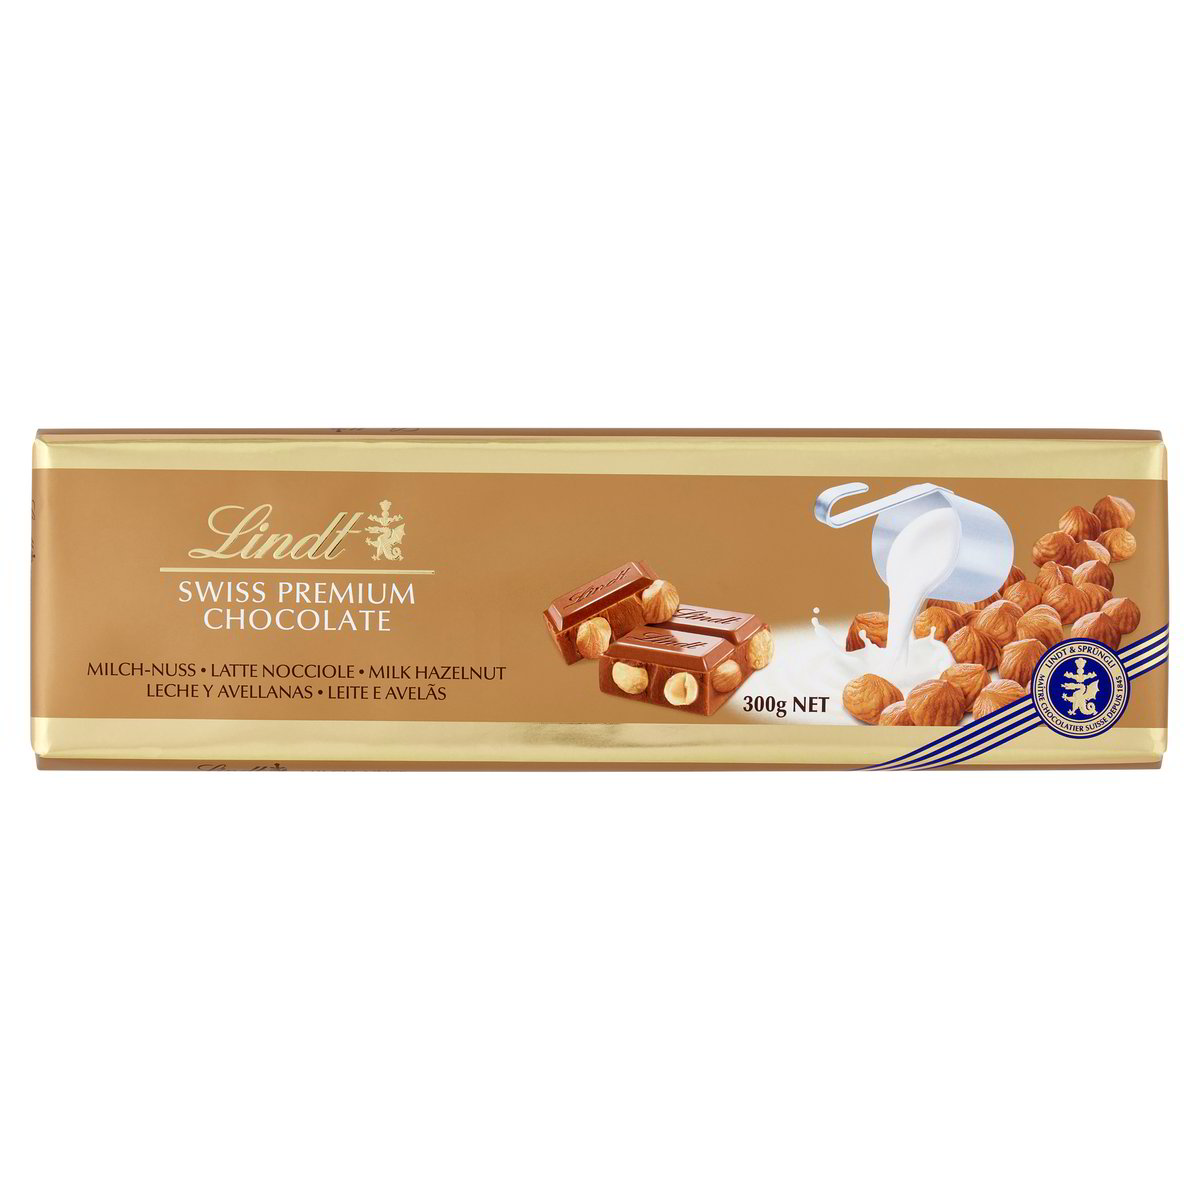 Swiss Premium Chocolate Latte Nocciole